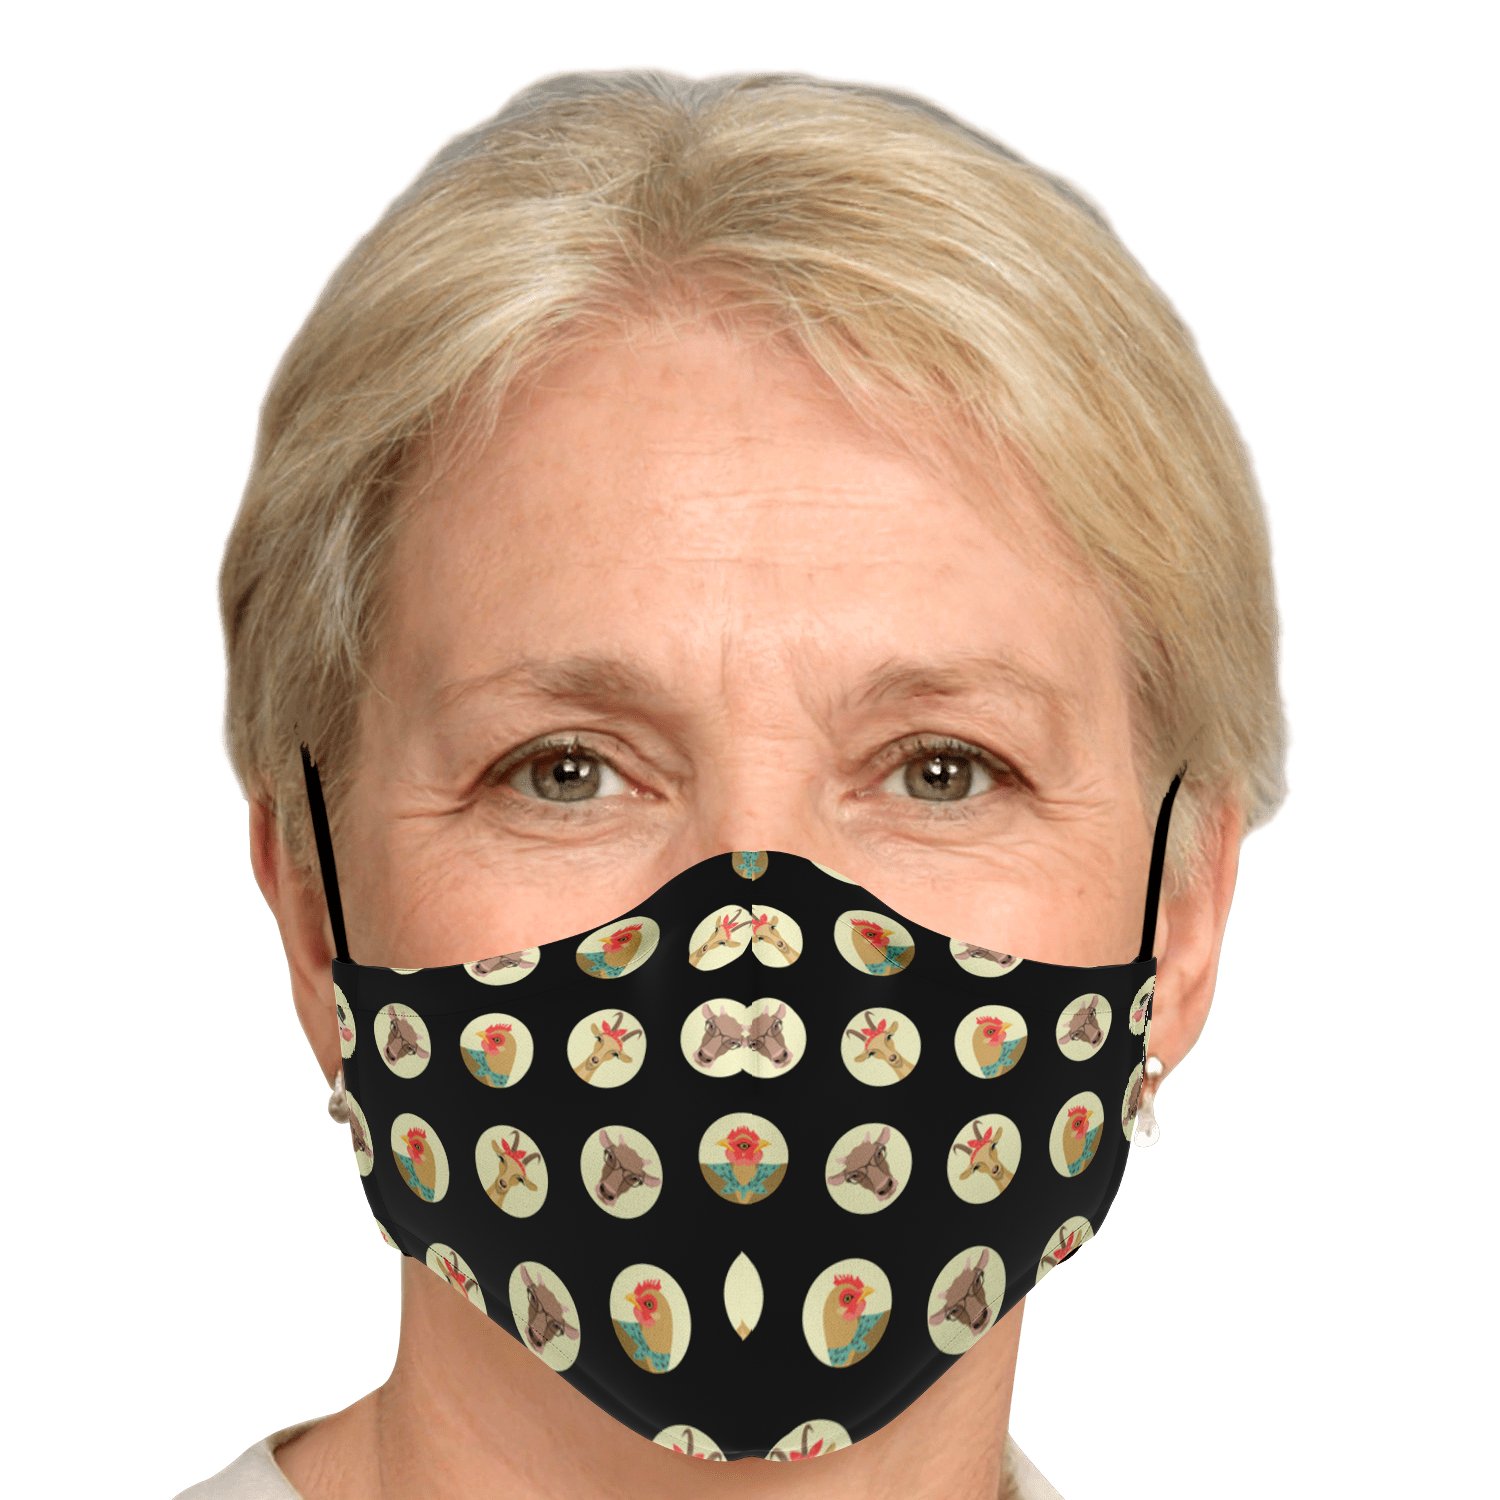 3pcs - Adult Fashion Face Mask / +$12 - 30pcs - PM 2.5 Carbon Filters Official COW PRINT Merch